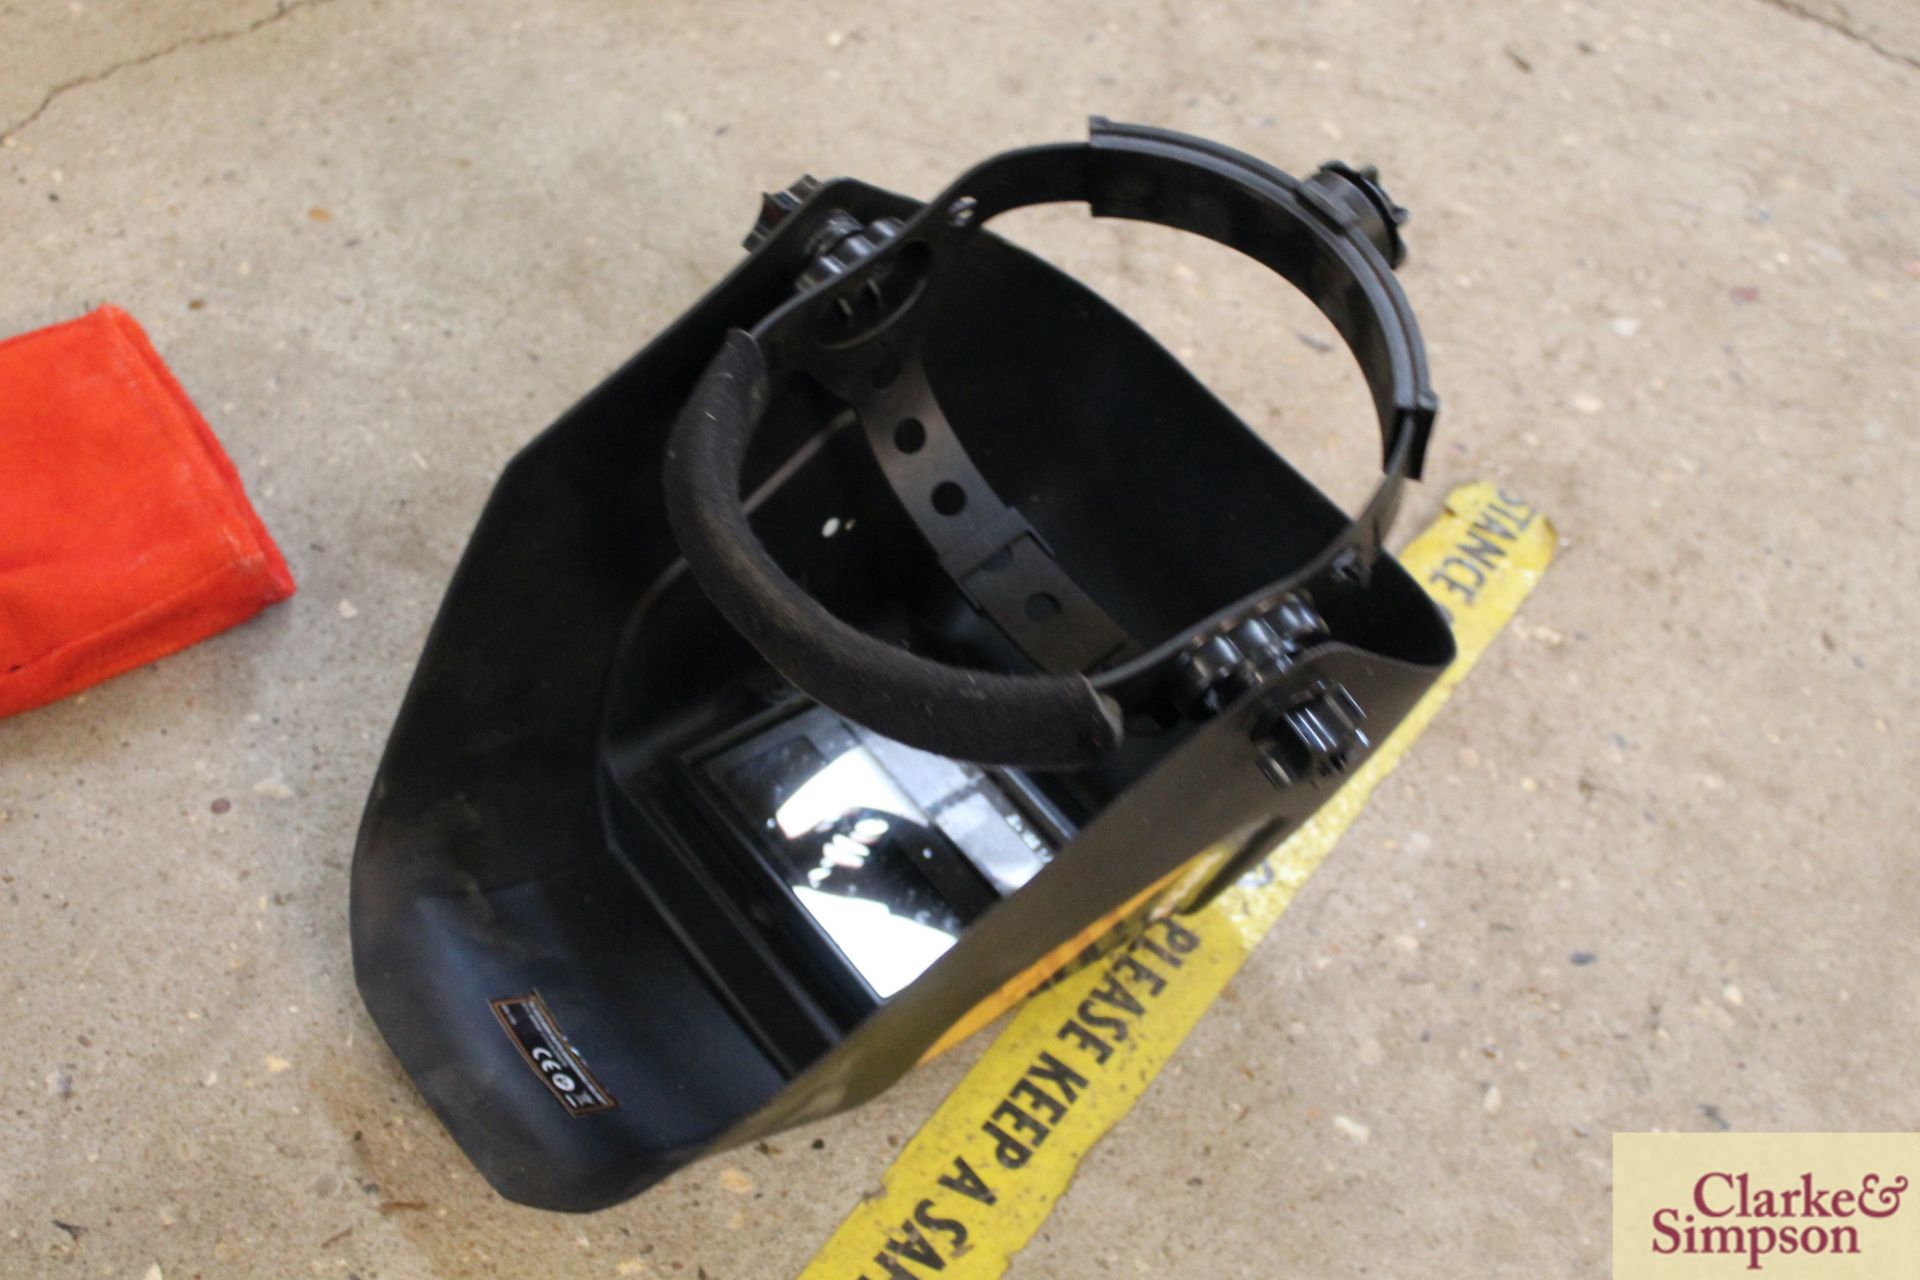 Auto darkening welding helmet and another. - Image 3 of 3